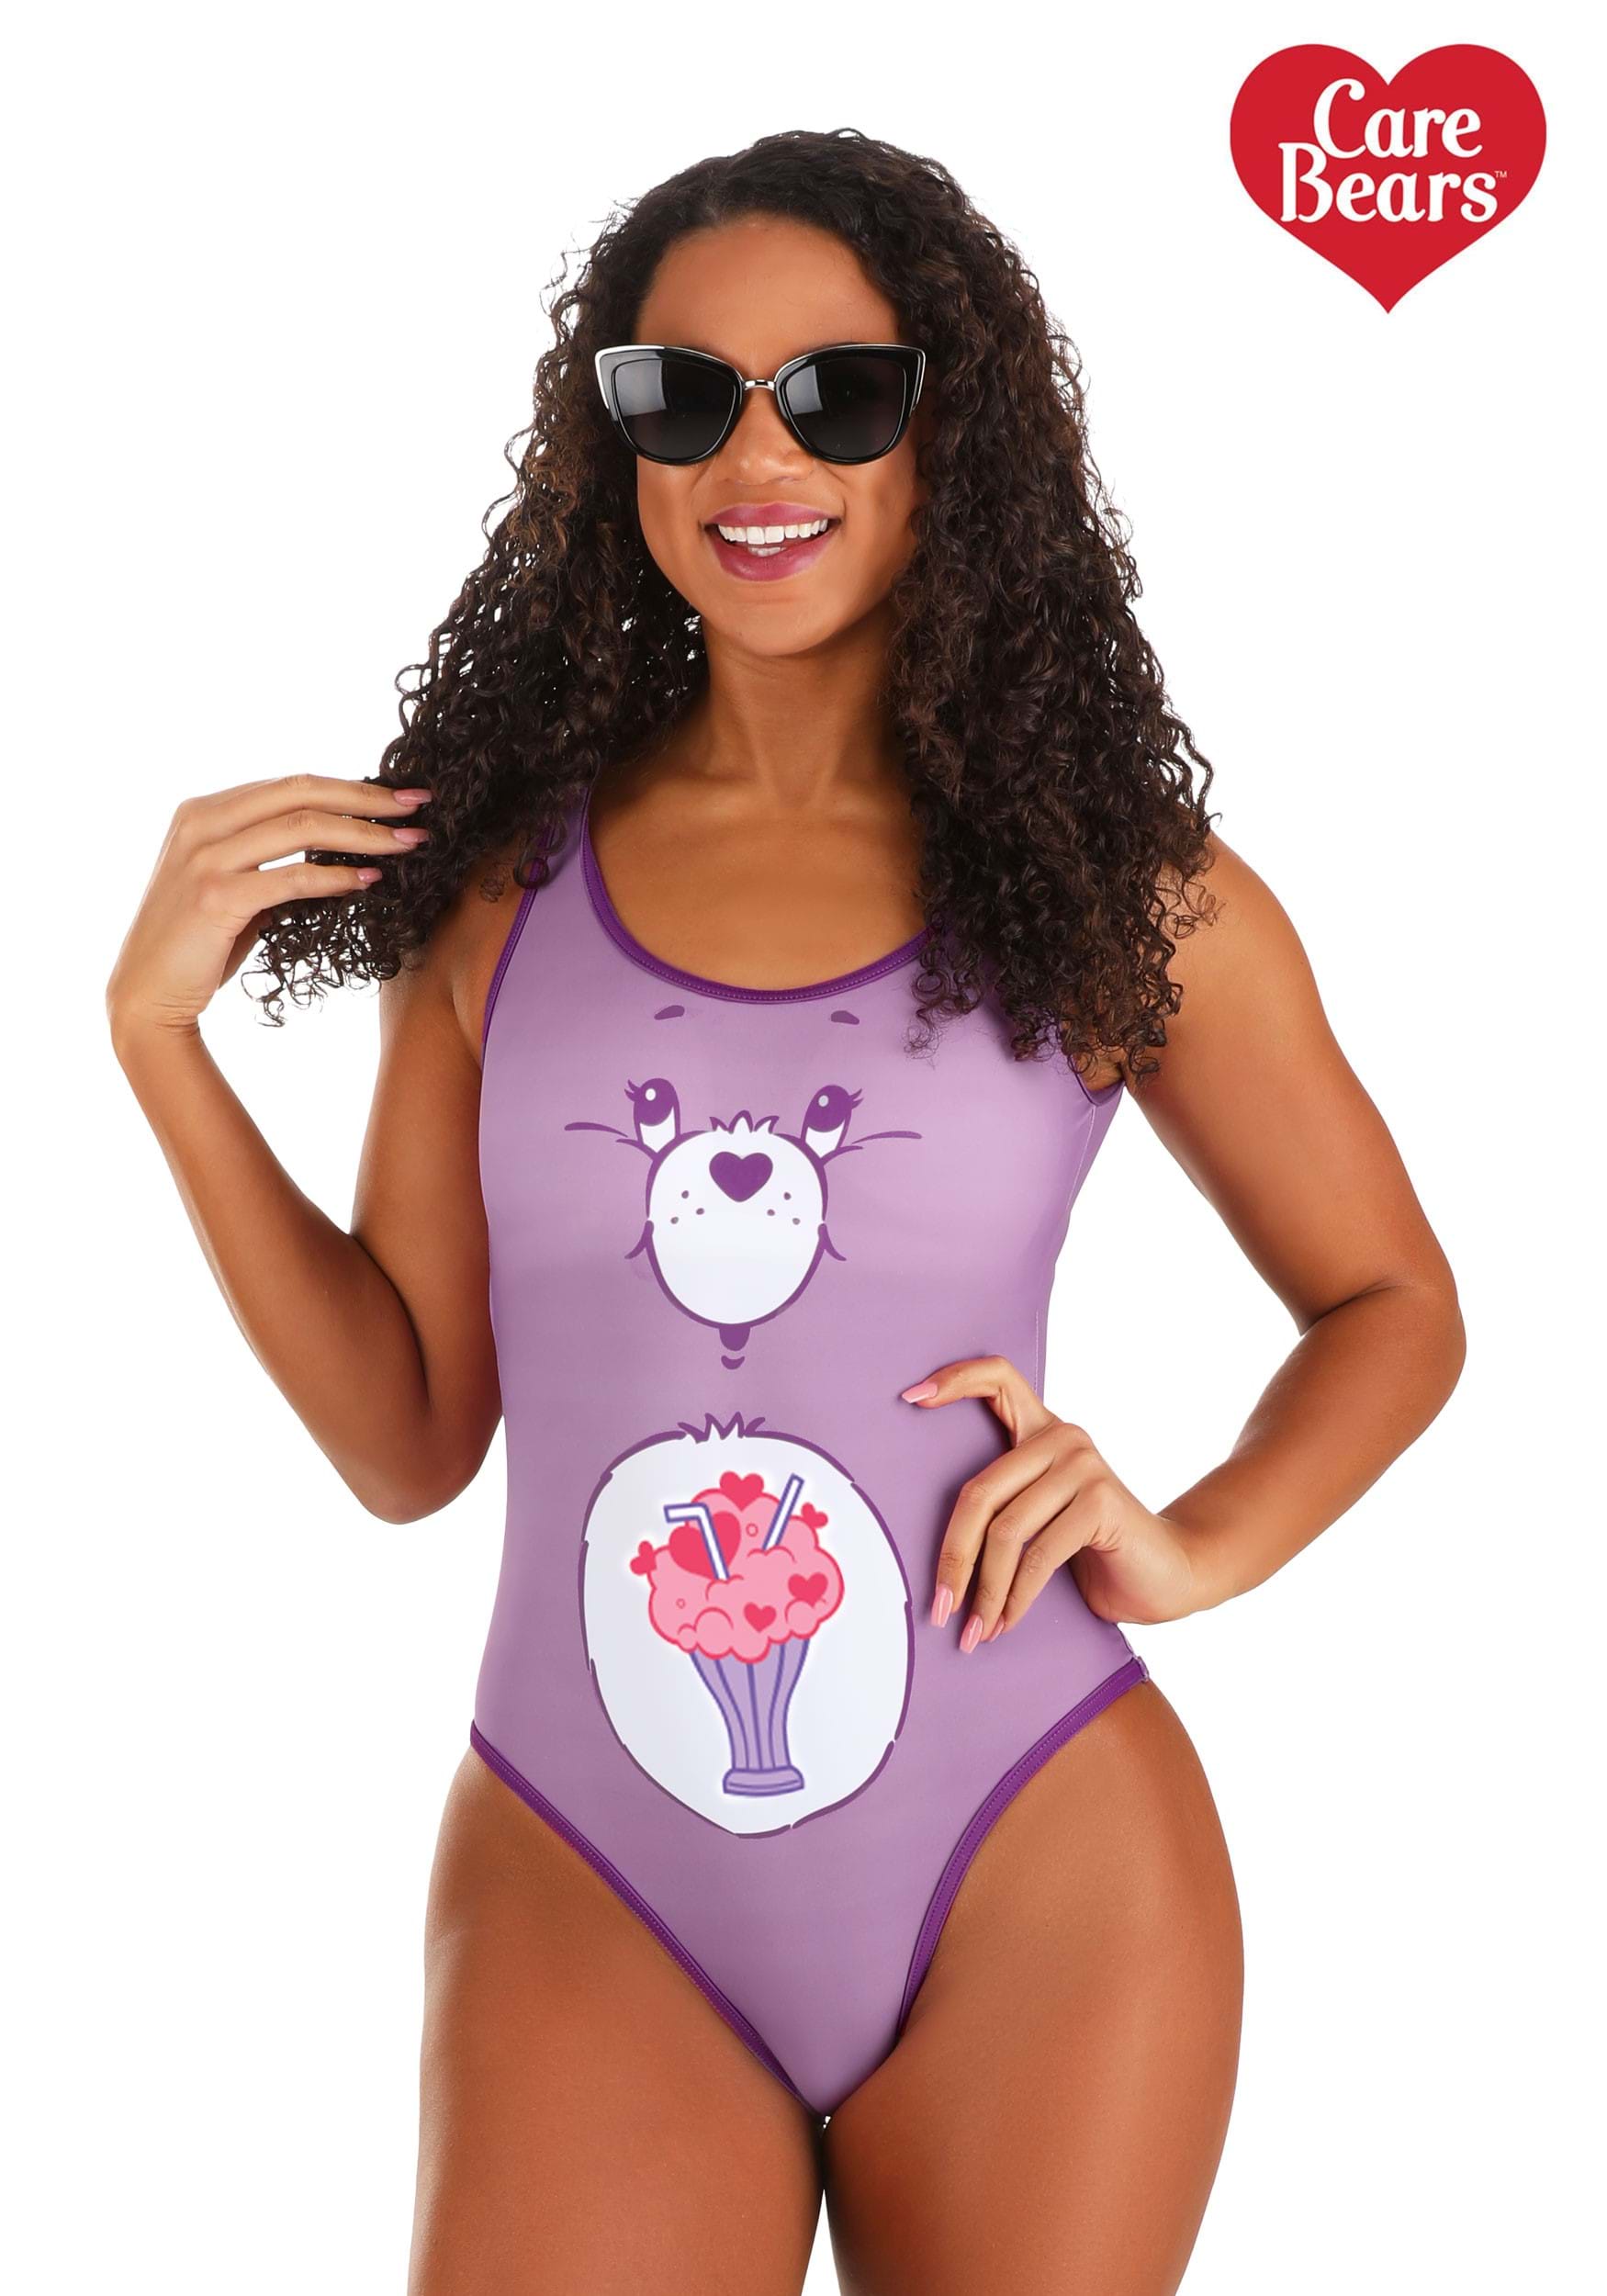 Share Bear Care Bear Swimsuit For Women